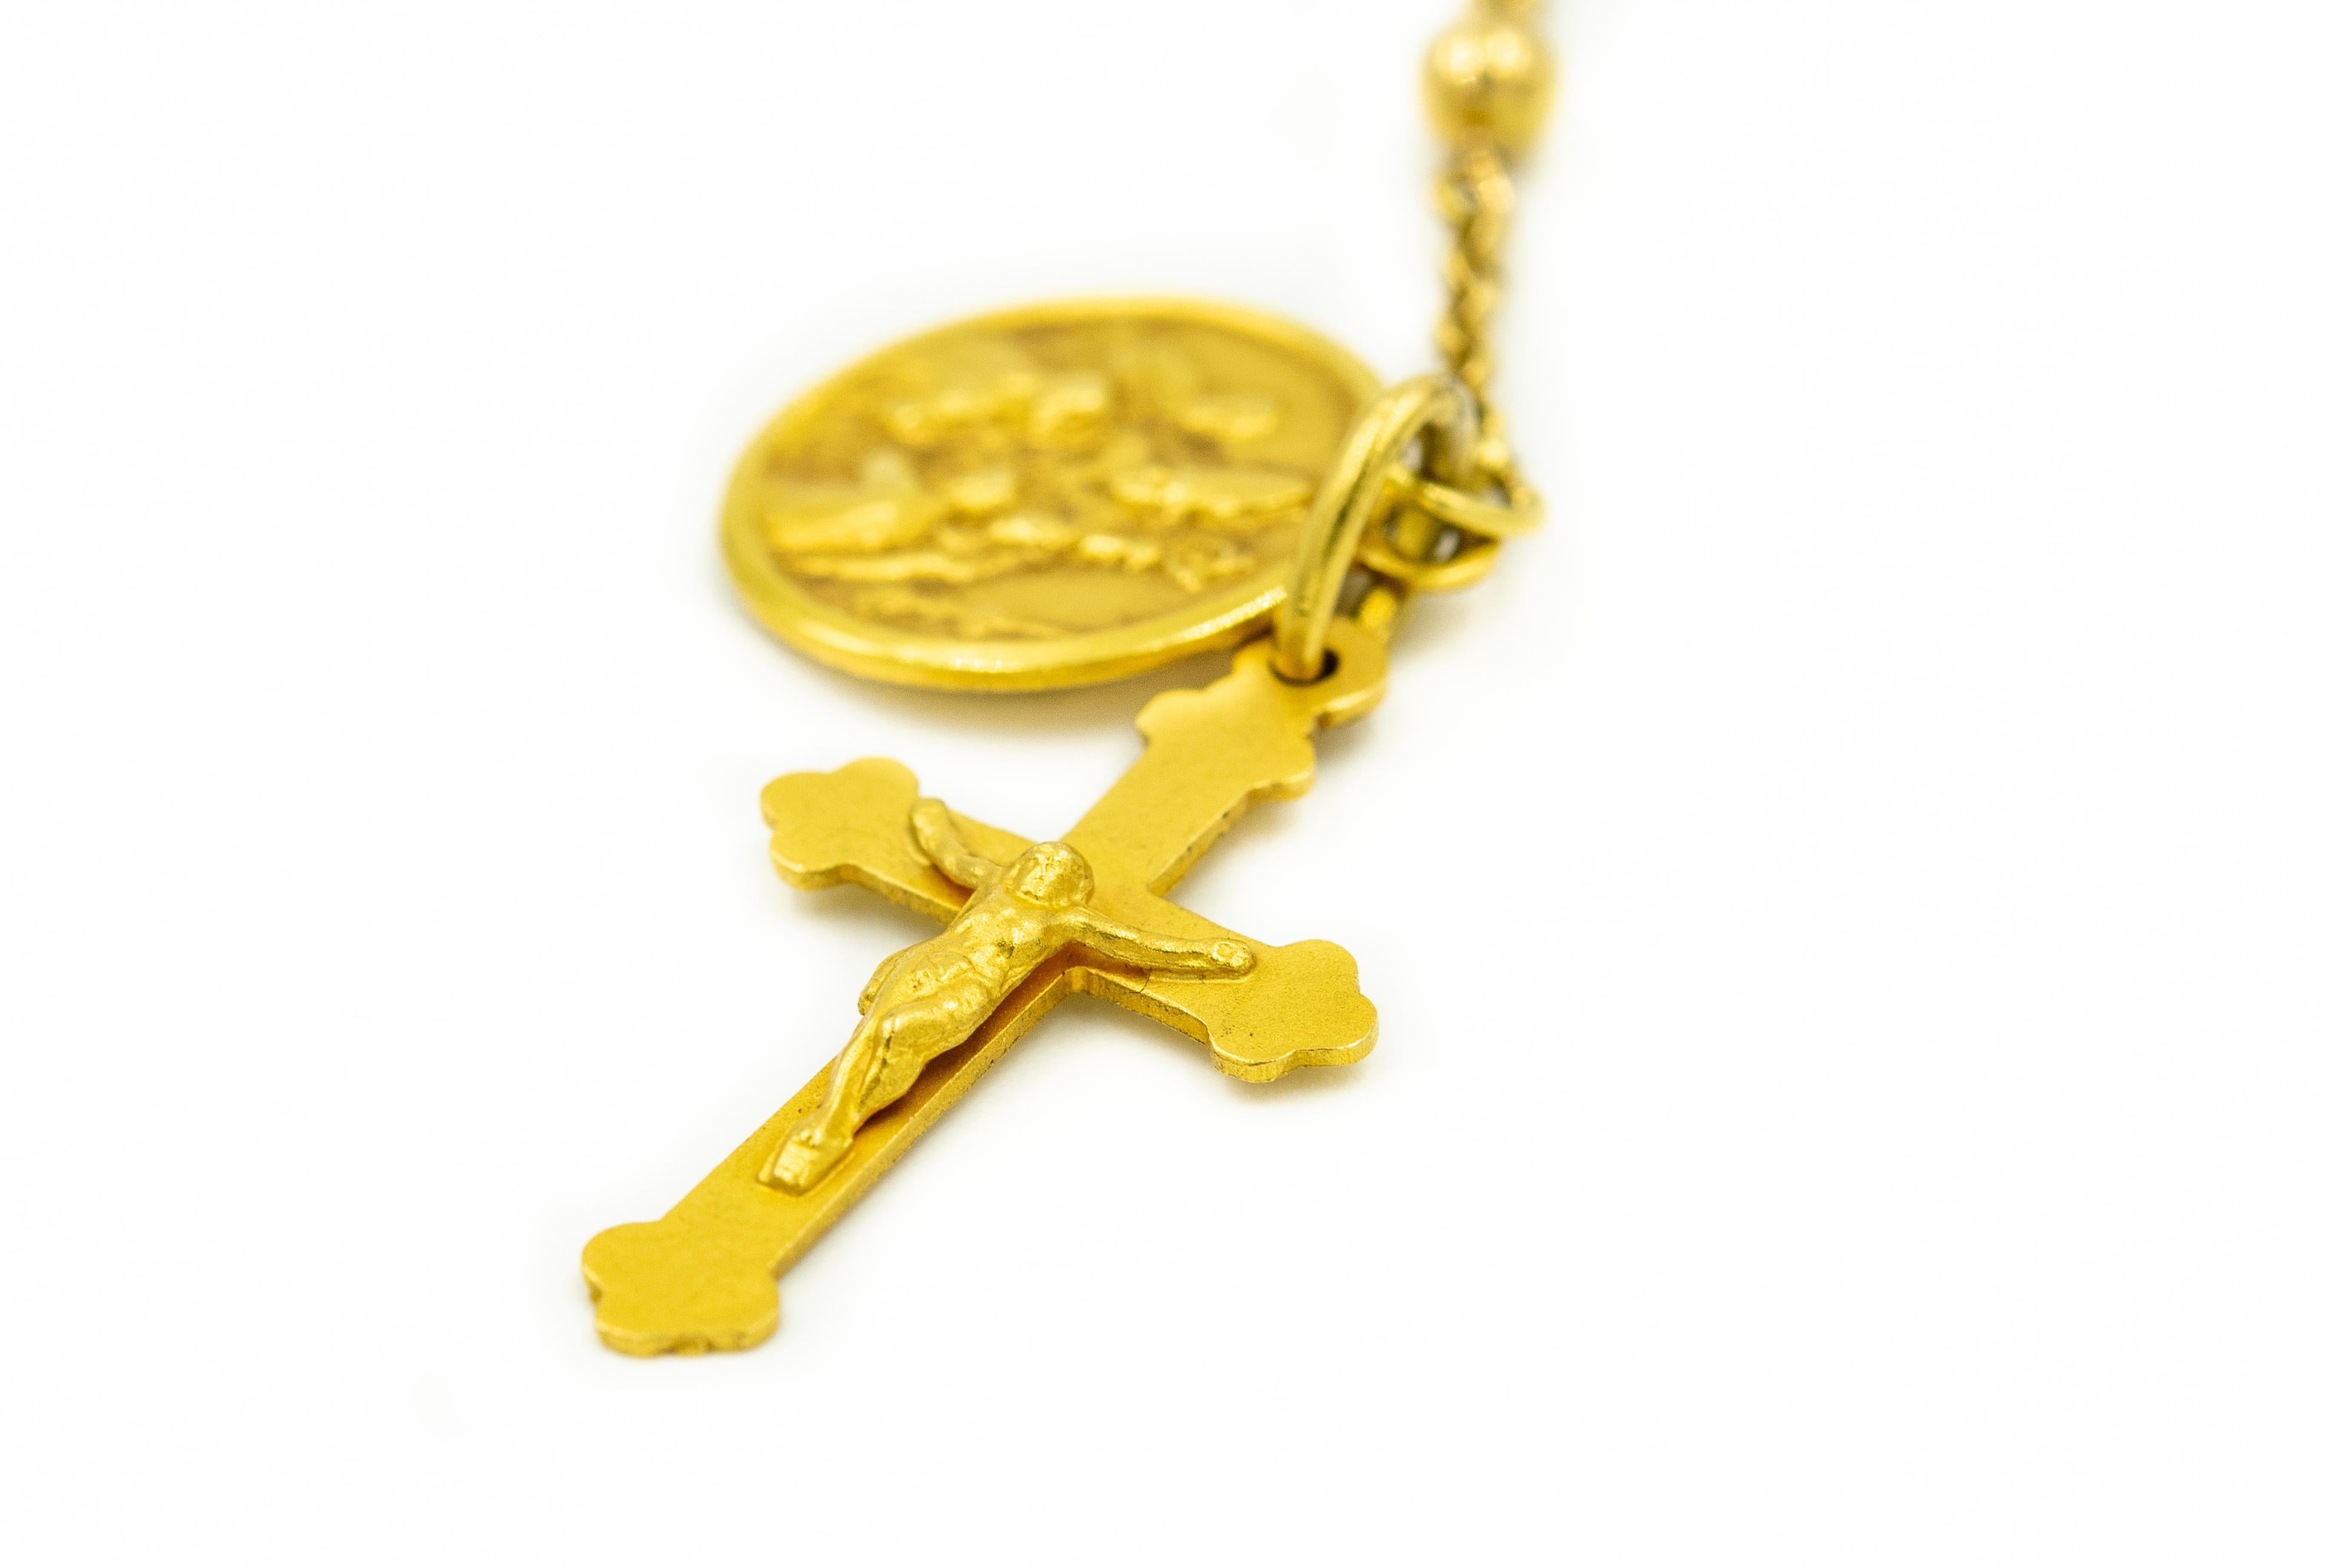 Chapelet italien du 20ème siècle en or jaune 18k avec un pendentif en forme de croix ainsi que le pendentif en forme de mémoire de confirmation Ricordo Della Cresima.

Il s'agit d'un chapelet et non d'un collier.  Si vous souhaitez le porter comme